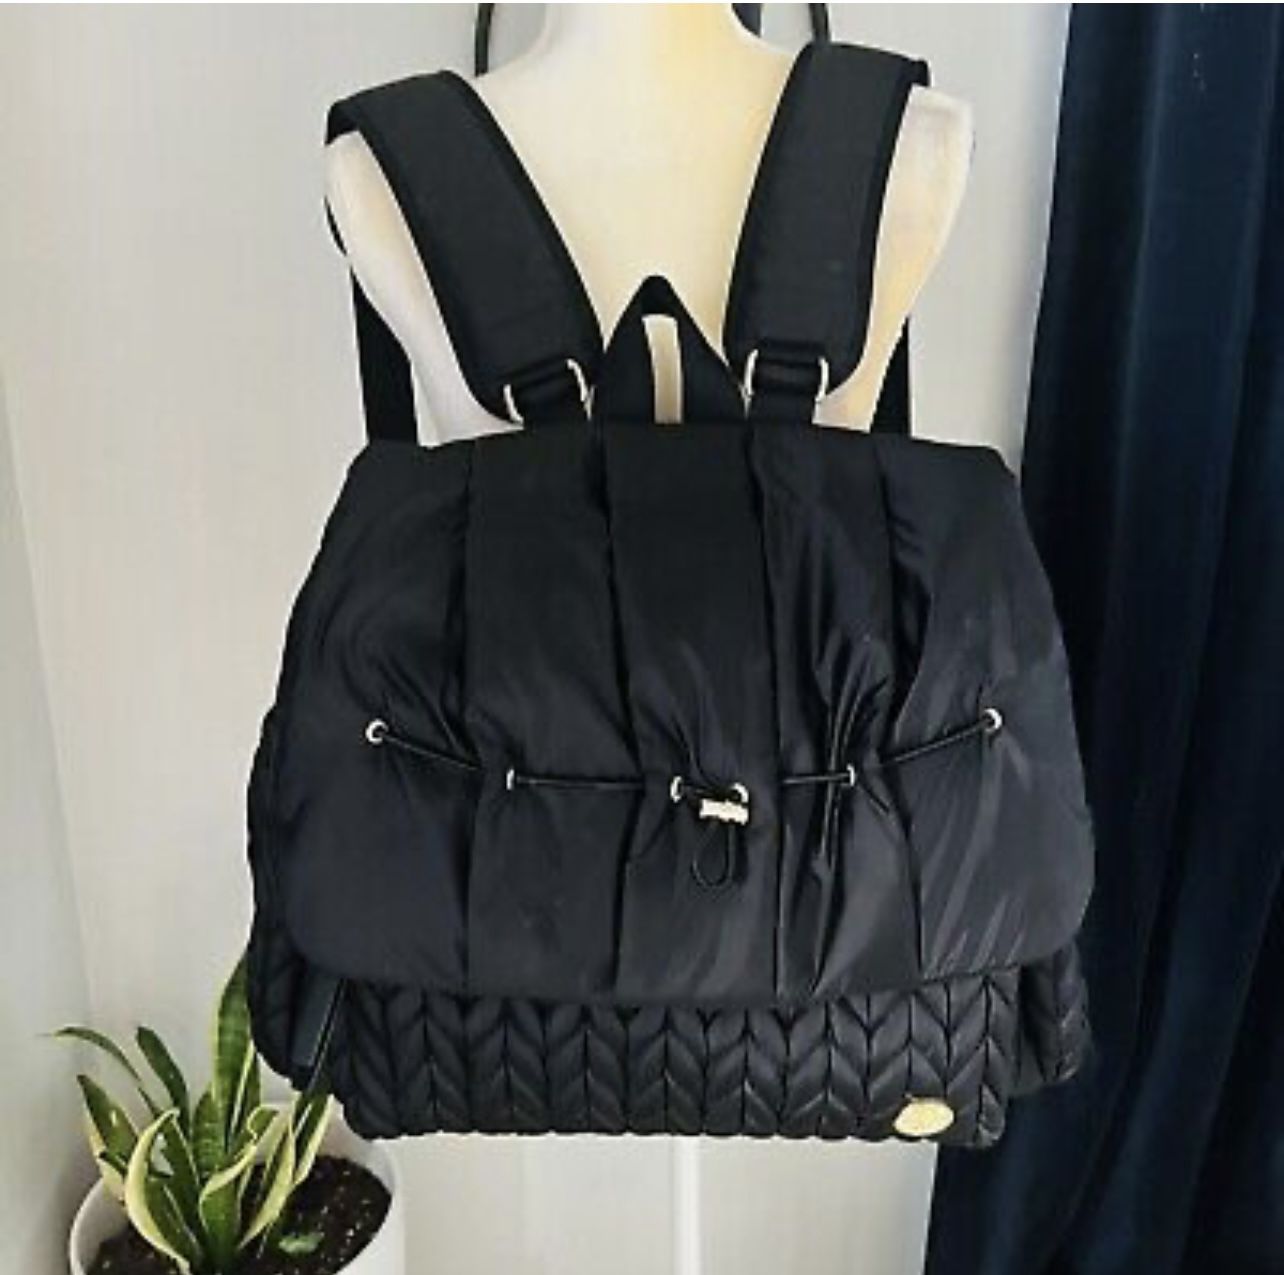 Happ brand Levy Backpack Black/ Diaper Bag 